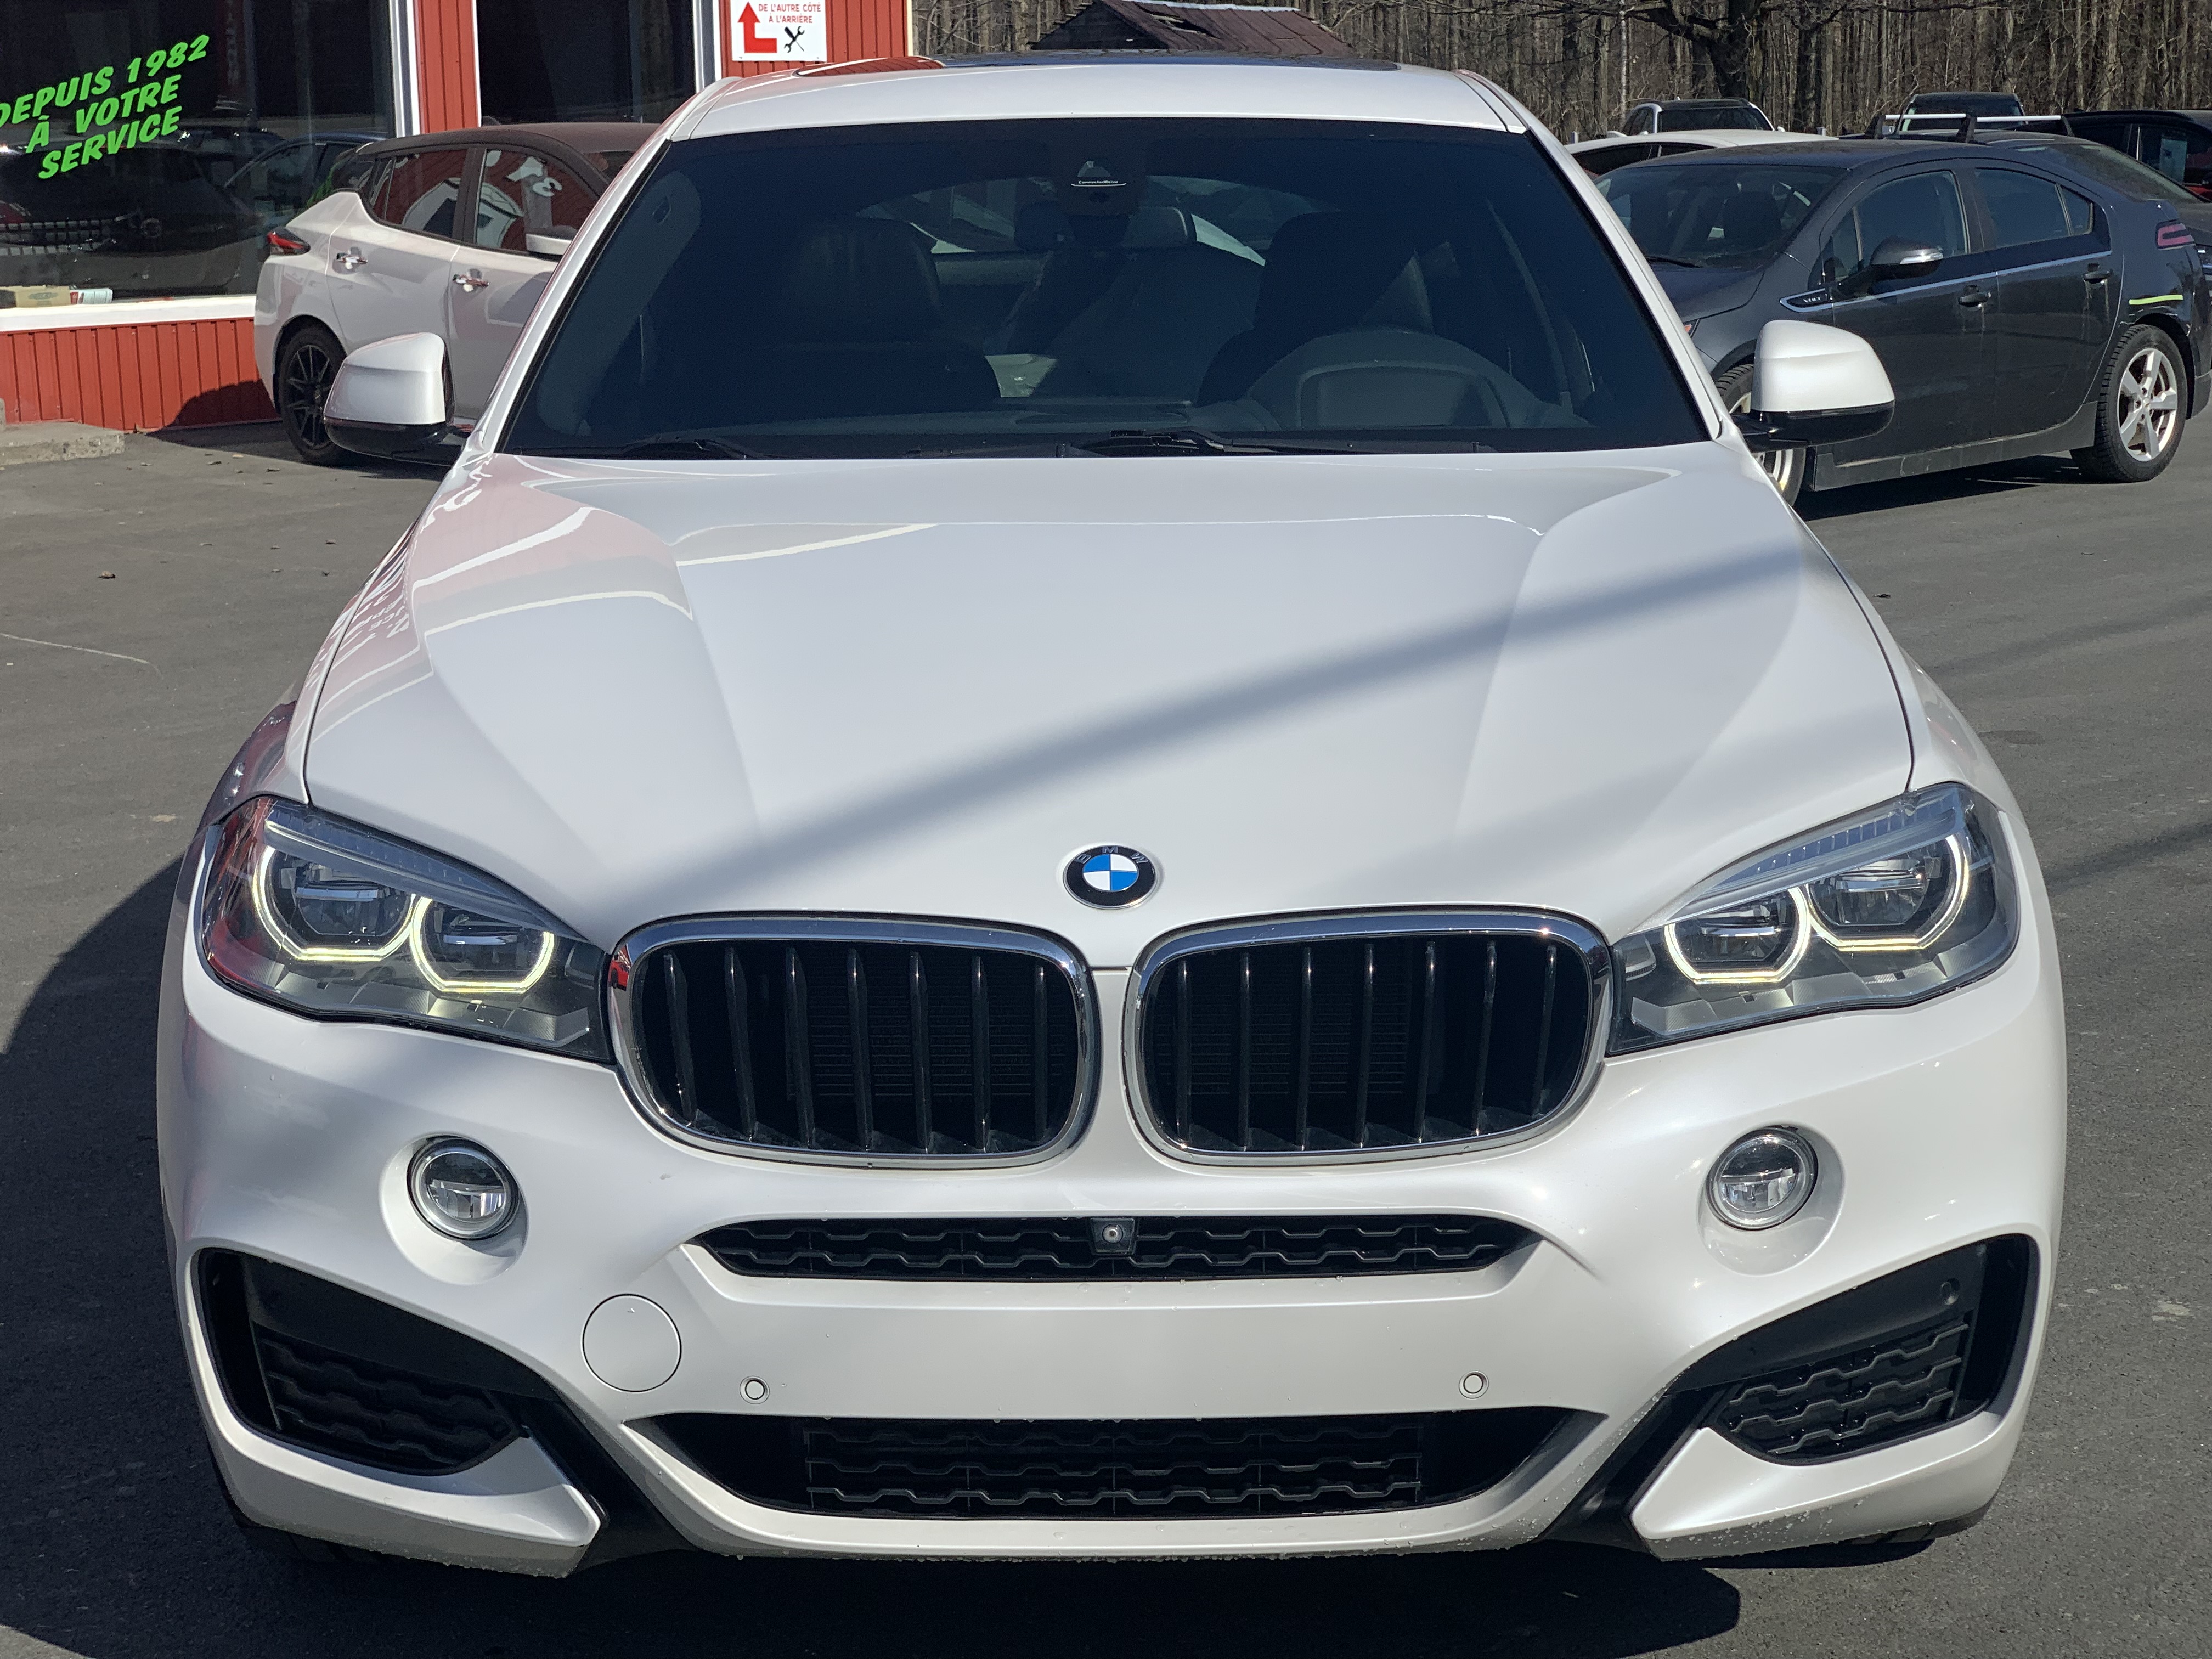 JN auto BMW X6 xdrive 35i 8608899 2015 Image 1